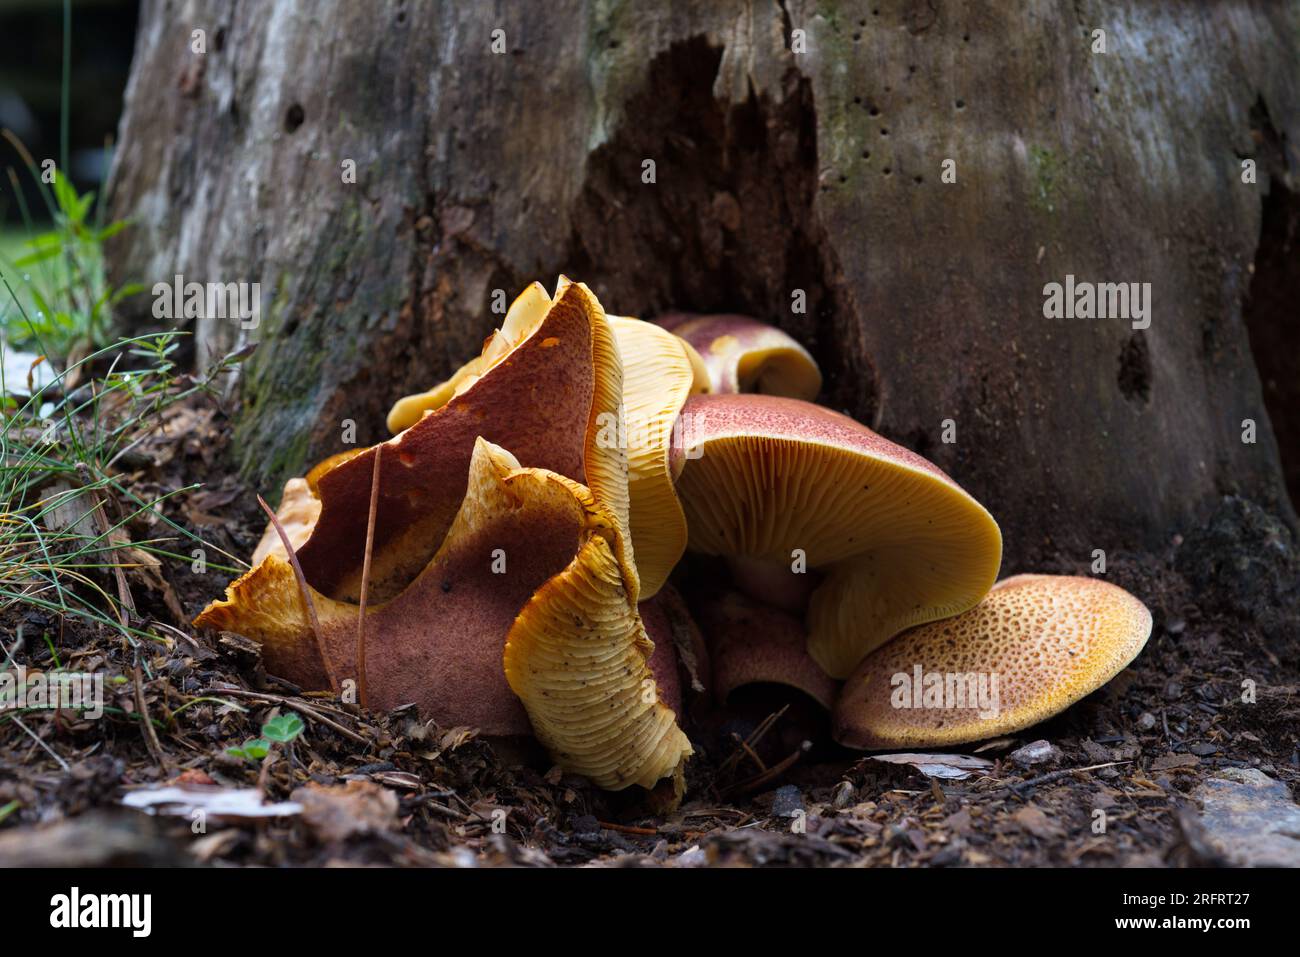 Mushrooms in the forest. Setas en el bosque. Stock Photo